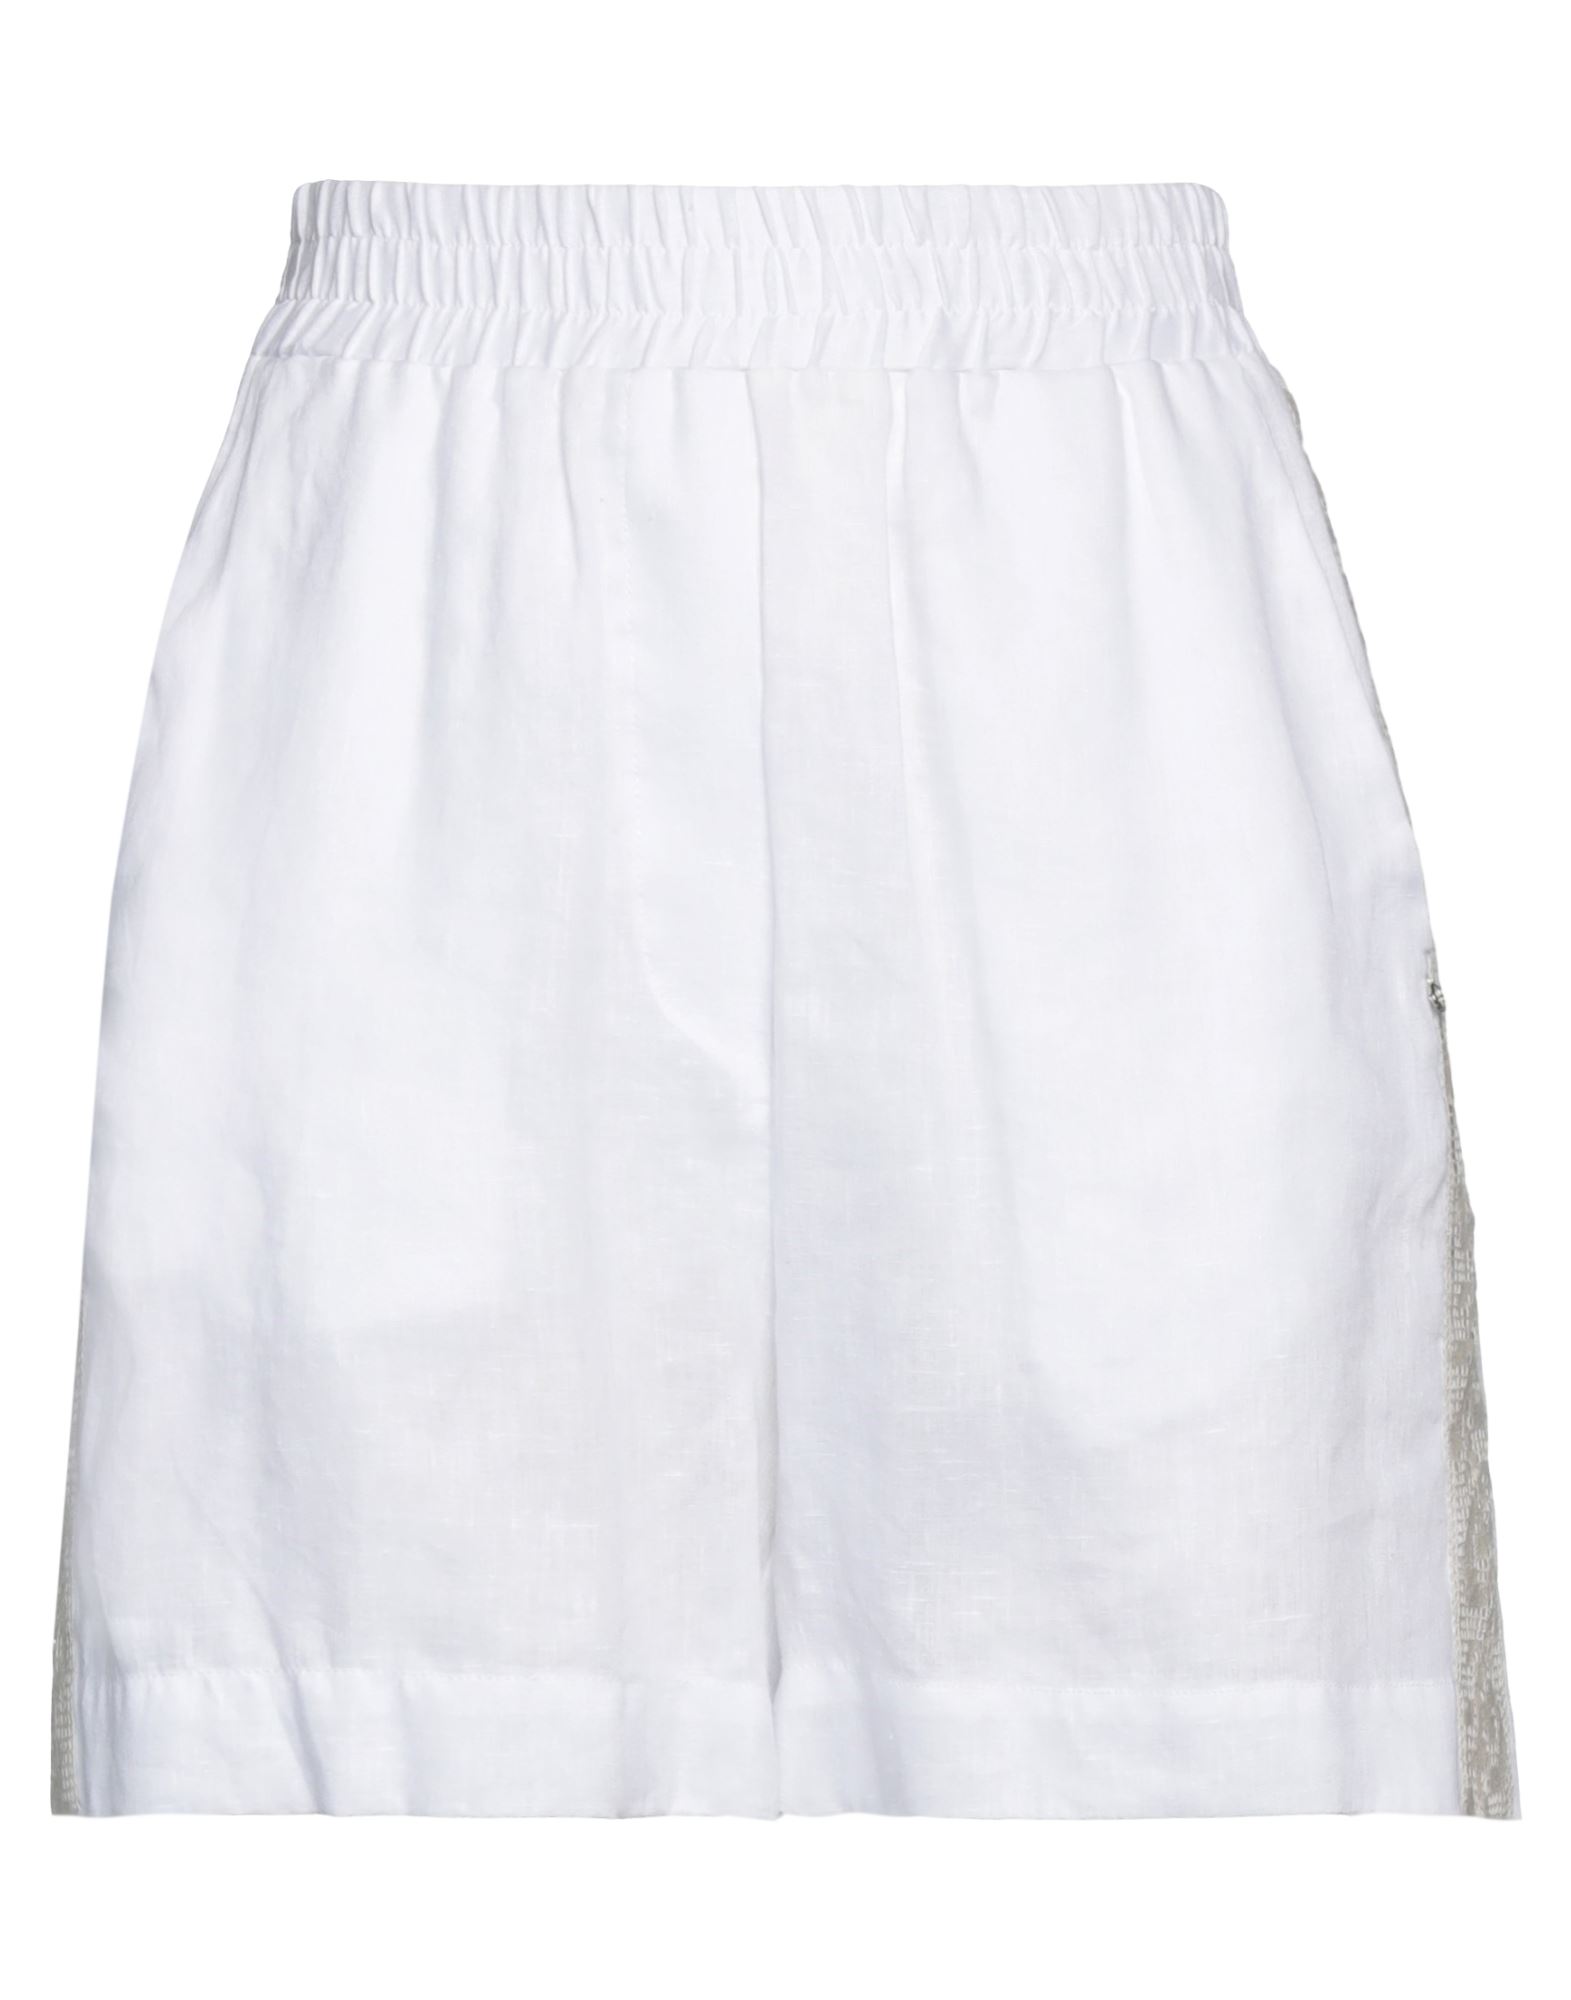 Ottod'ame Woman Shorts & Bermuda Shorts White Size 10 Linen